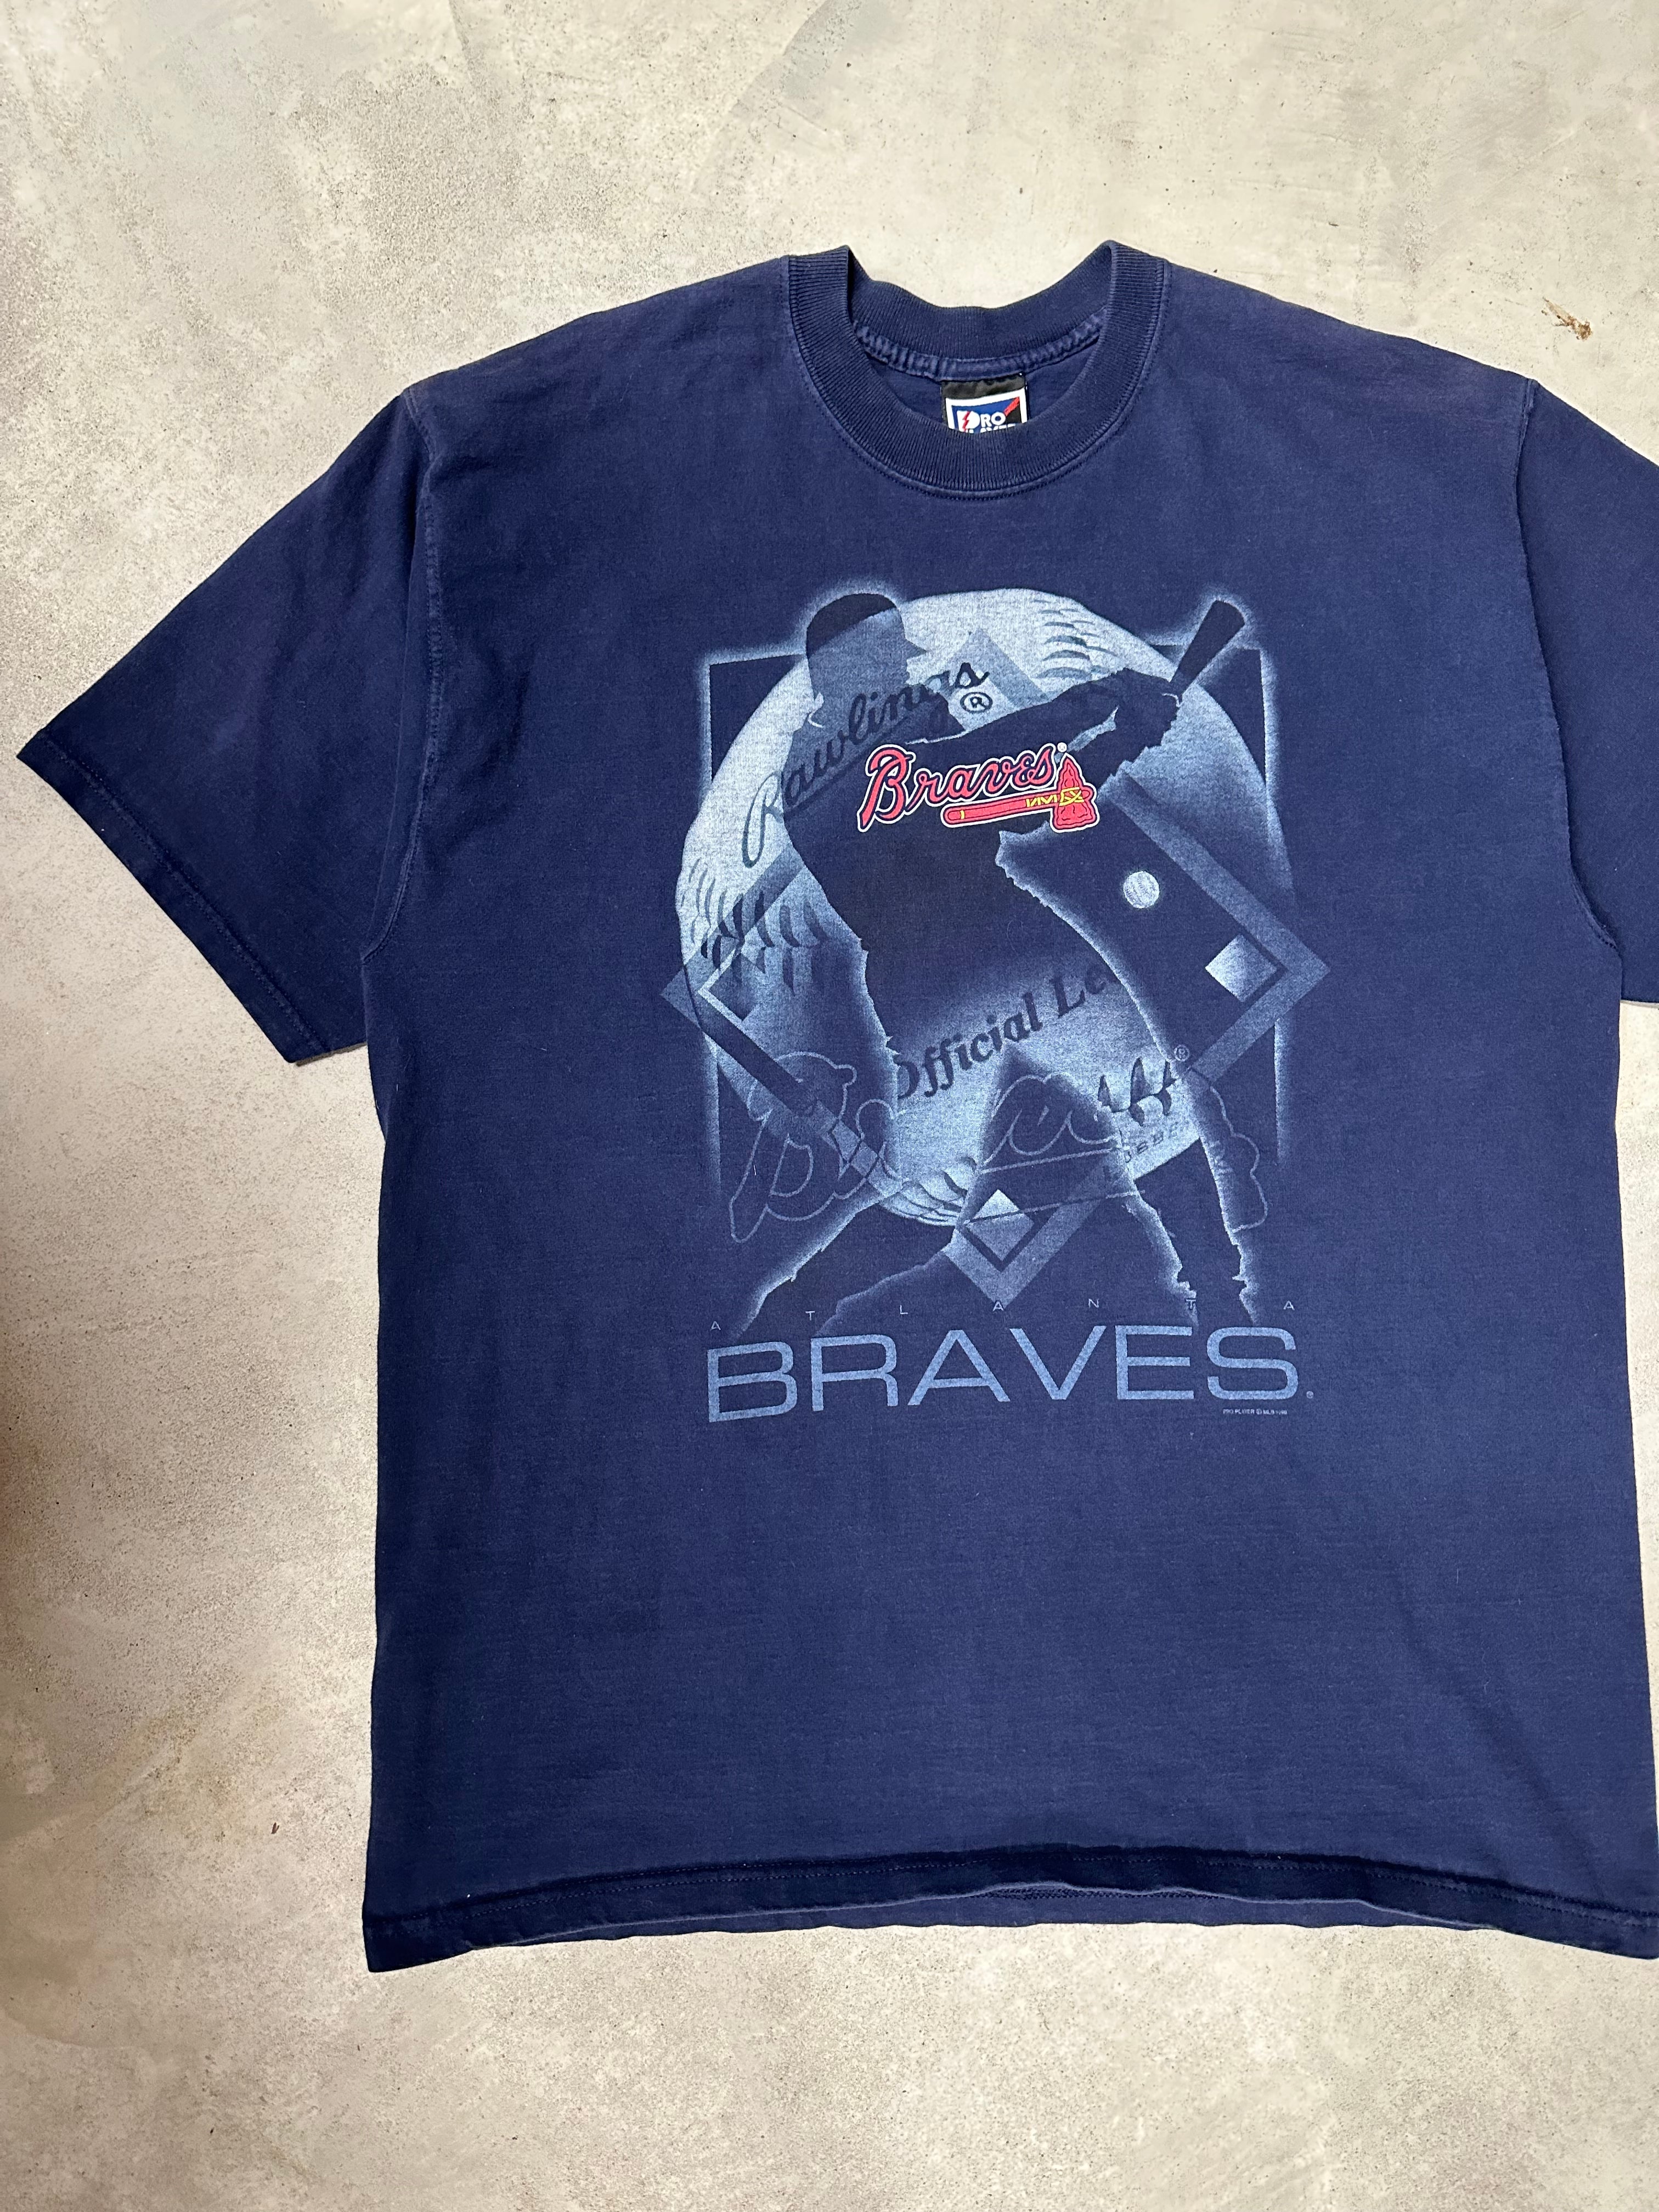 1998 Atlanta Braves T-Shirt